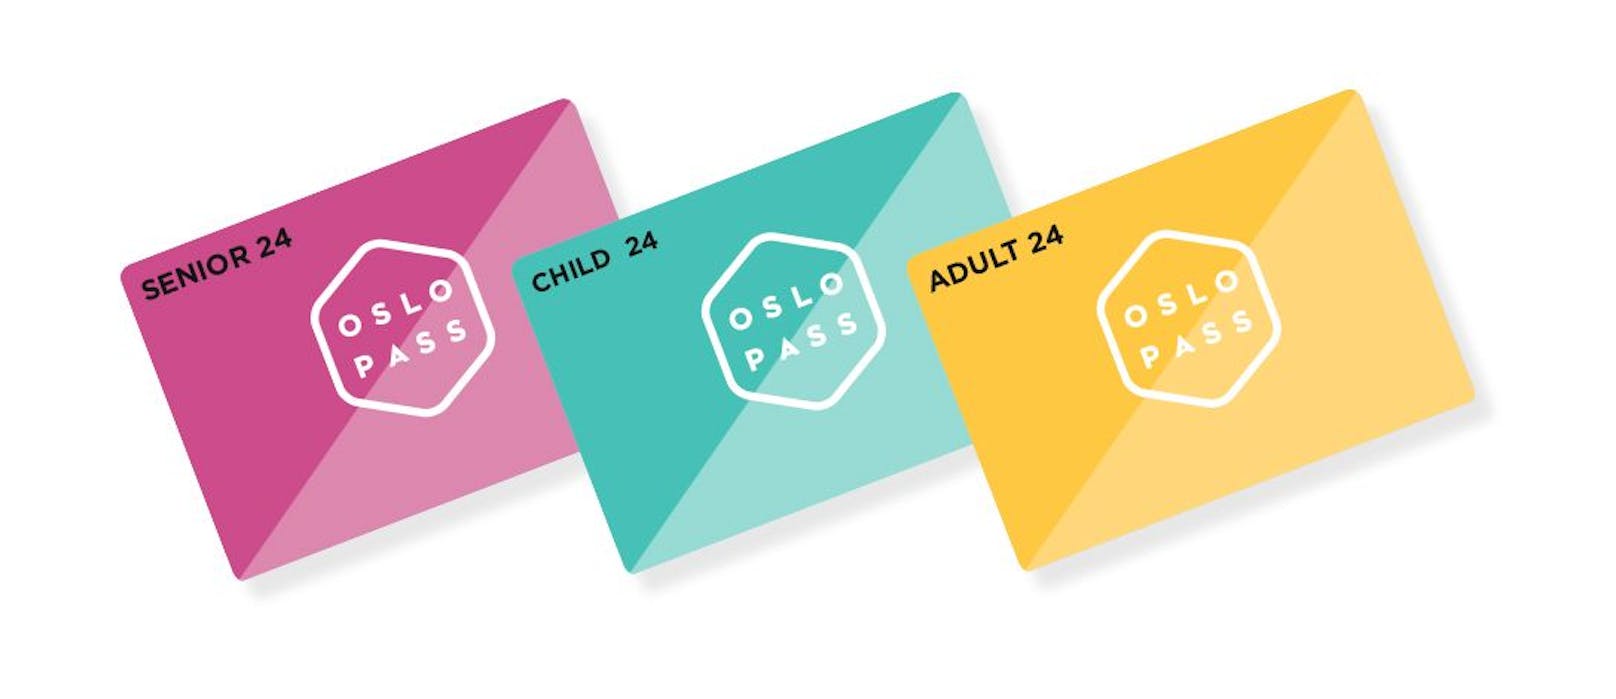 DocLX City Card Solutions gewinnt nach Kopenhagen und Helsinki nun auch Oslo mit digitalem Gästekarten-Konzept.